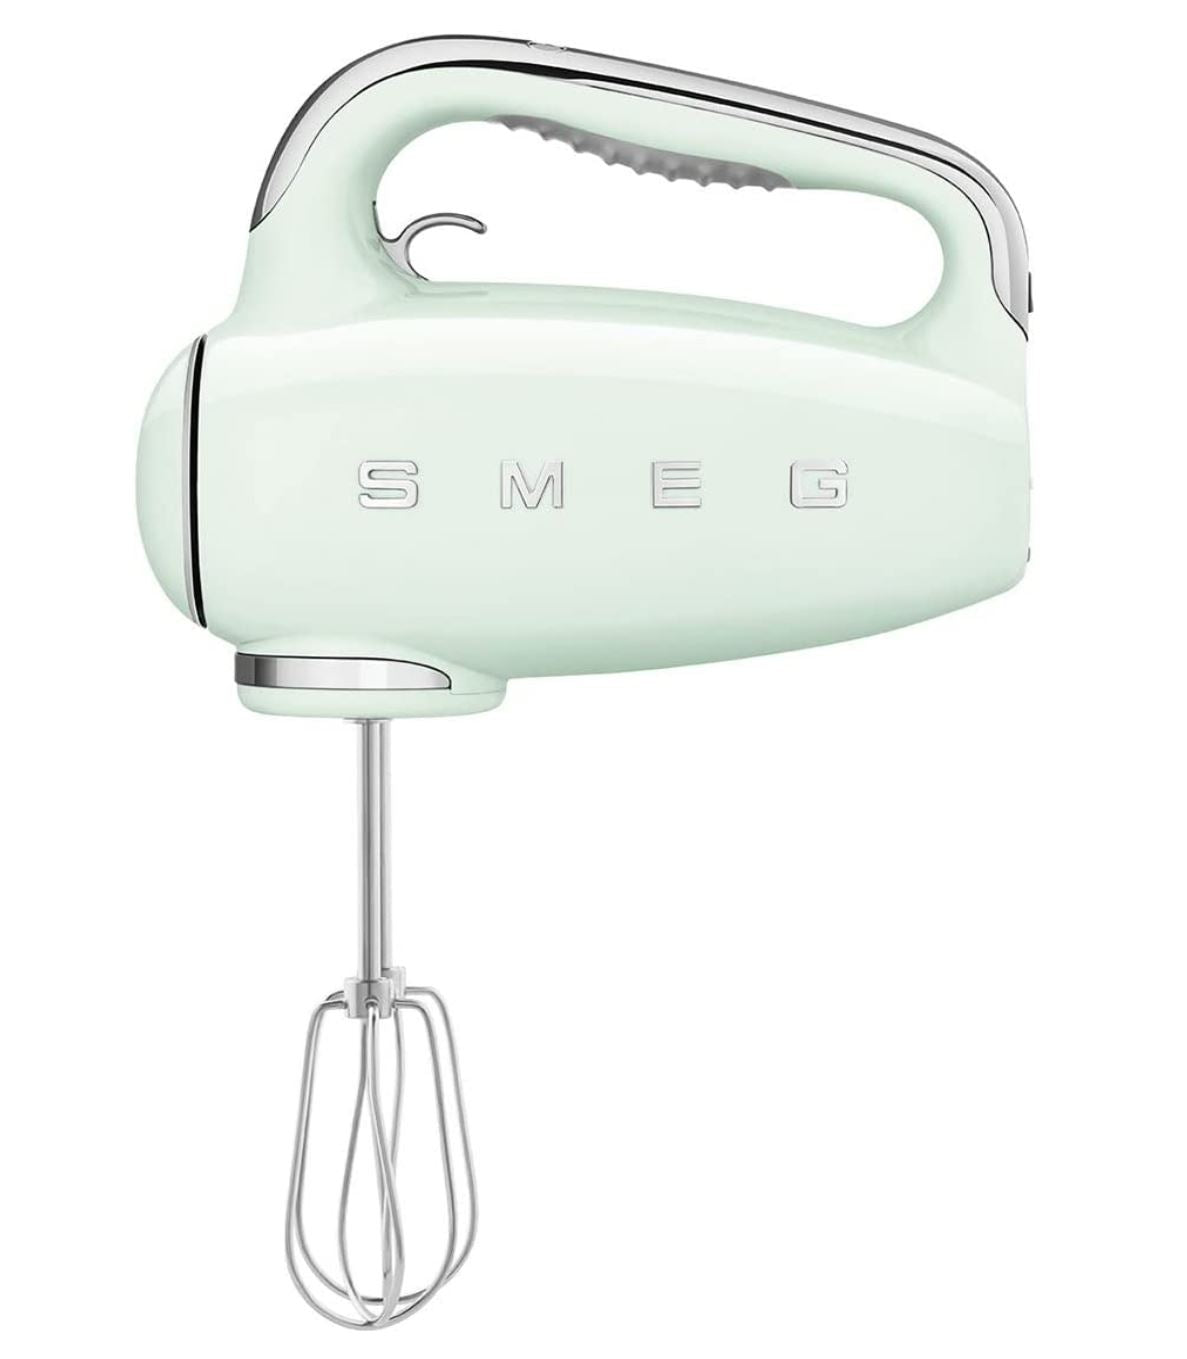 SMEG Retro-Style Hand Mixer